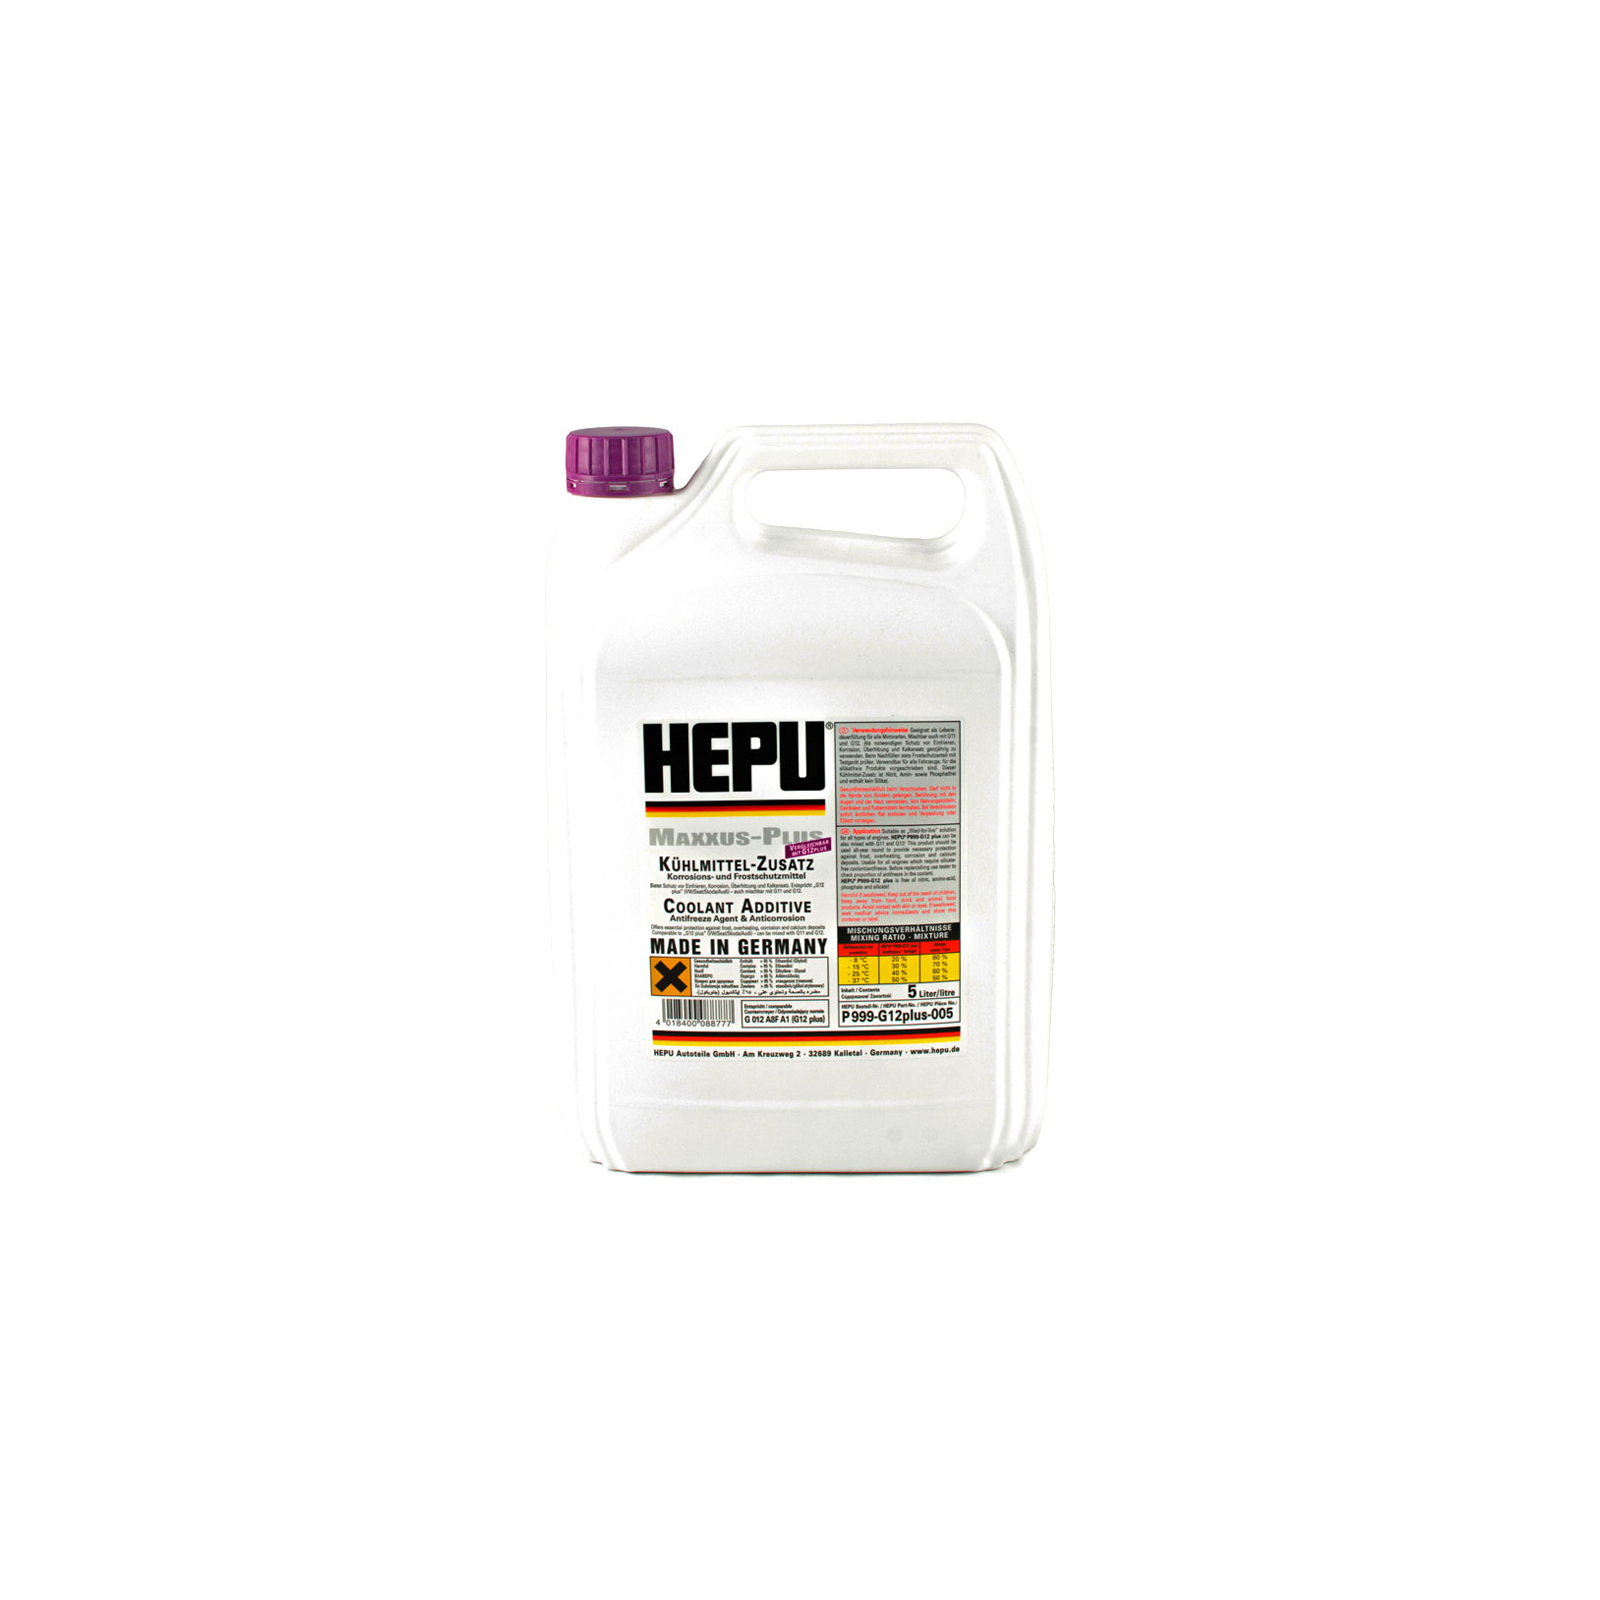 Антифриз HEPU G12plus 5л фіолетовий (P999-G12plus-005)